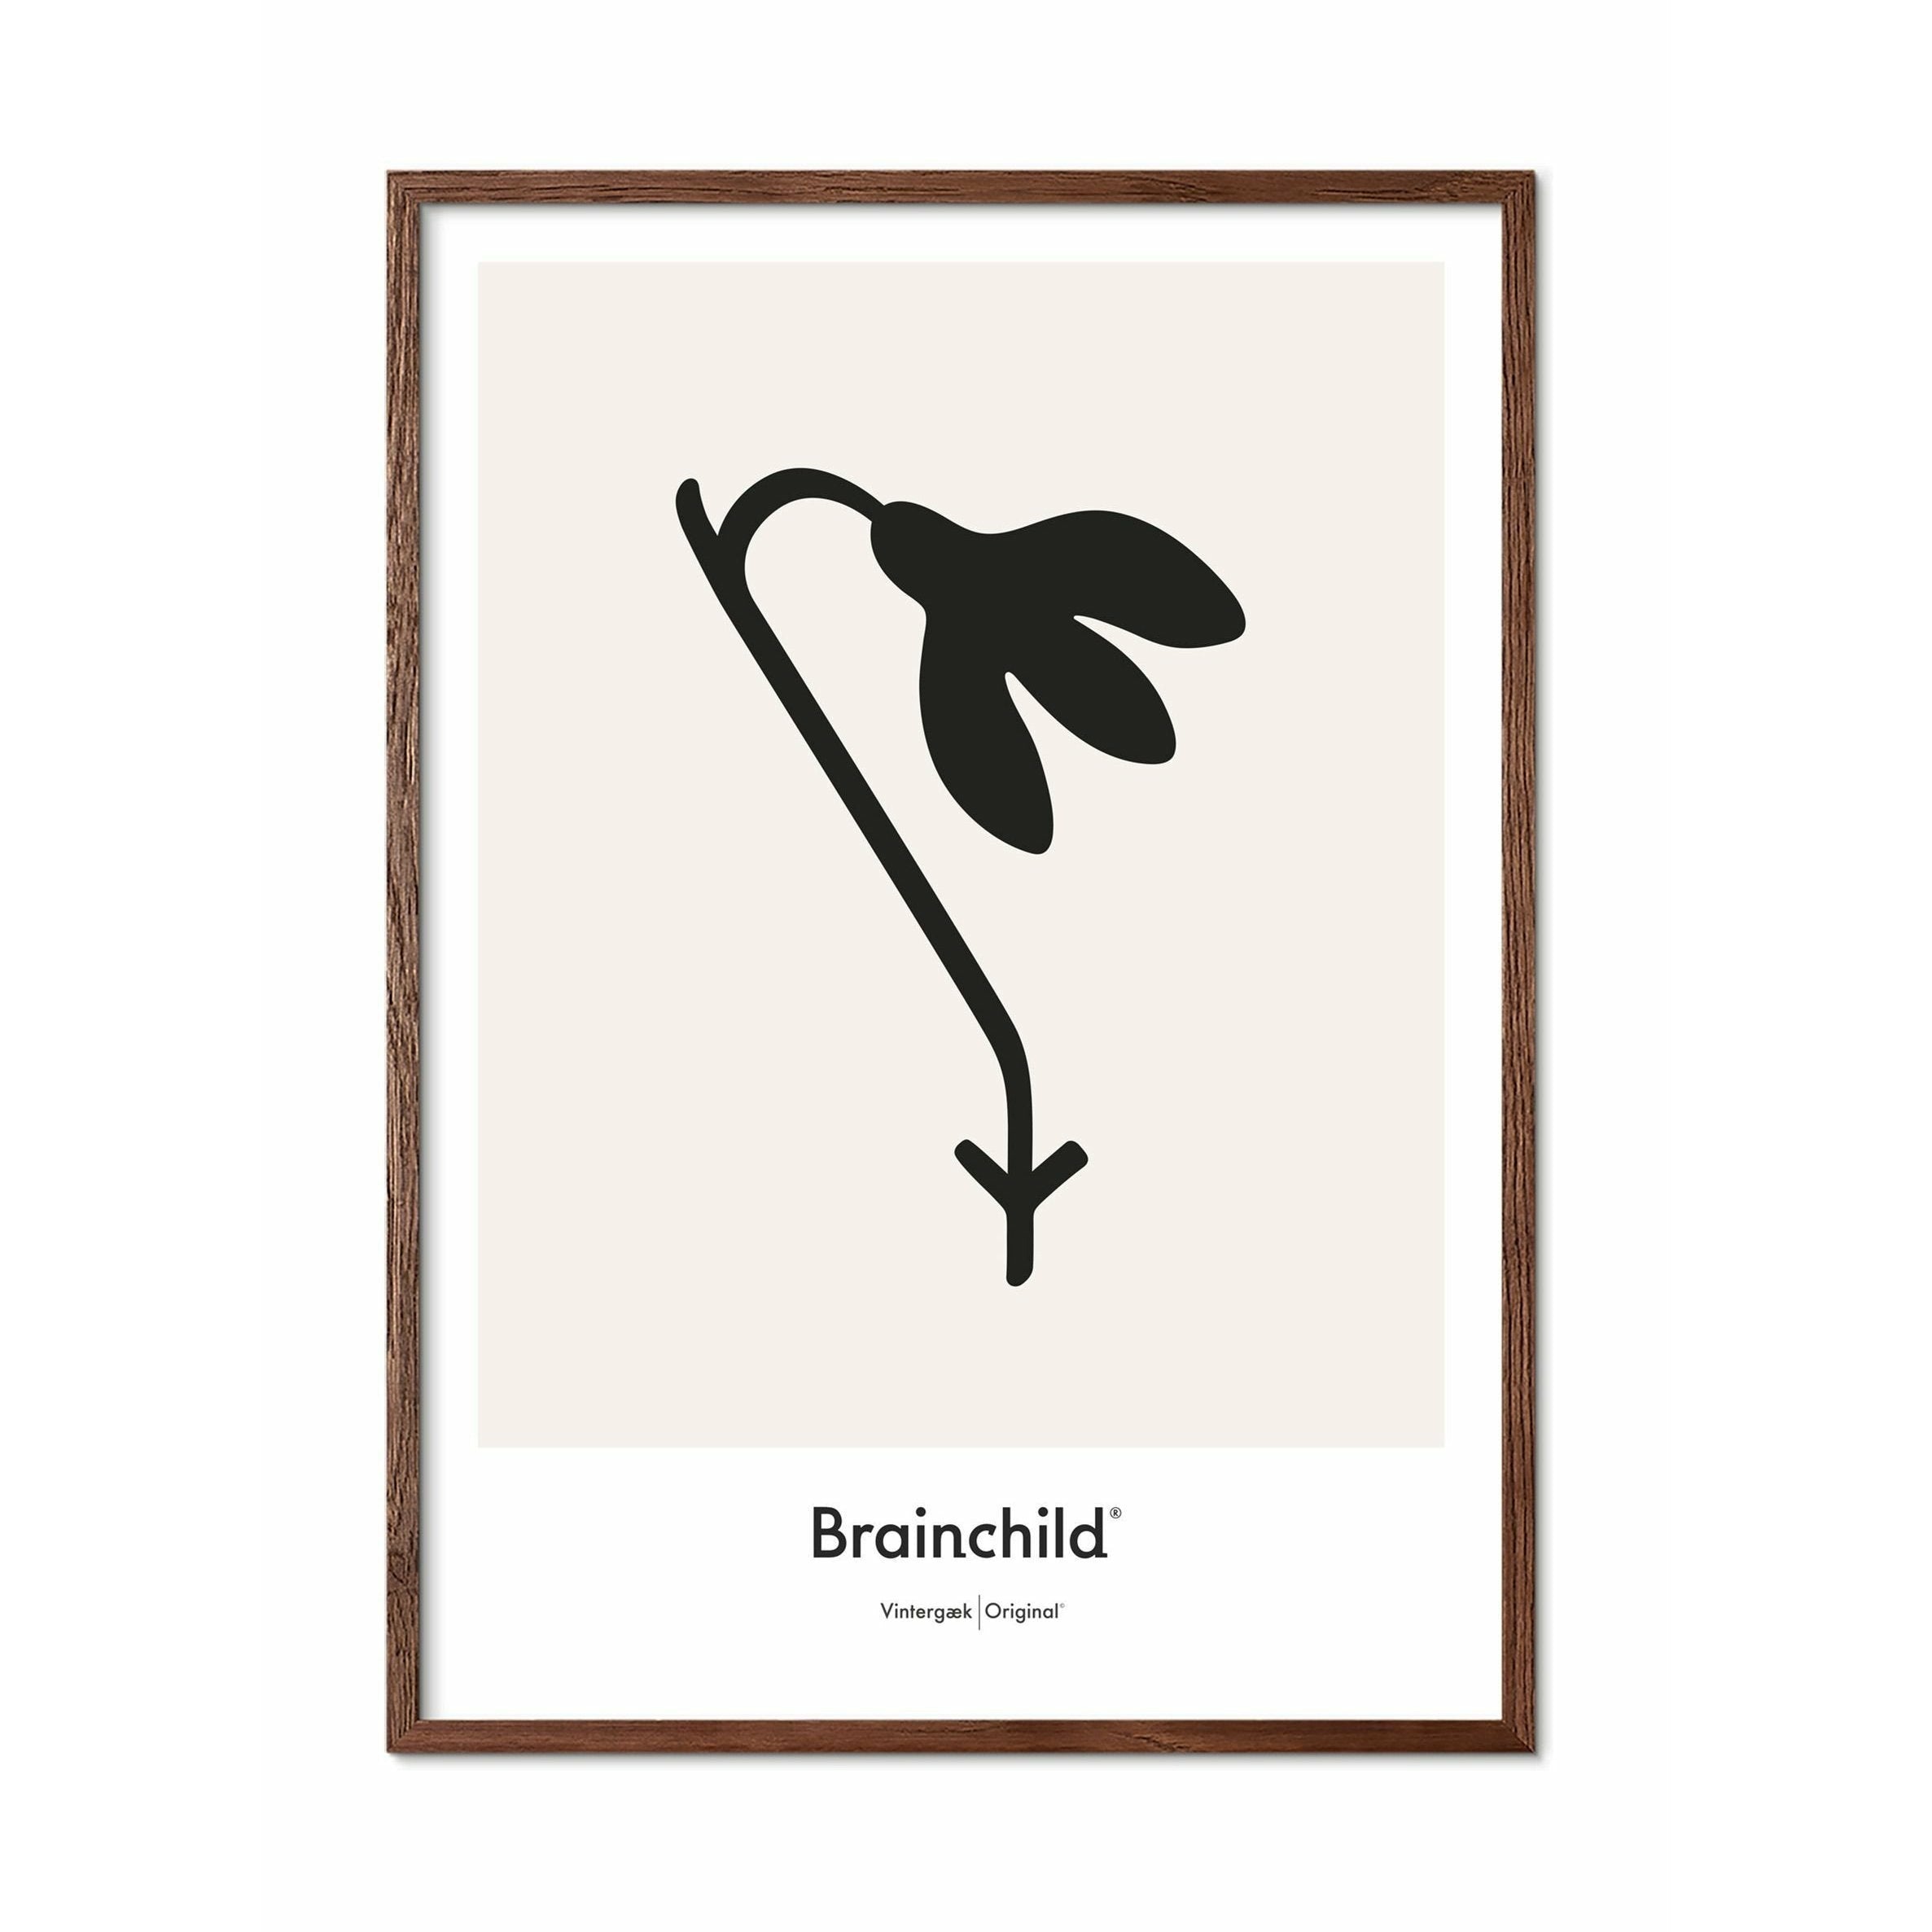 Brainchild Snowdrop Design Icon Poster, Frame Made Of Dark Wood 30x40 Cm, Grey